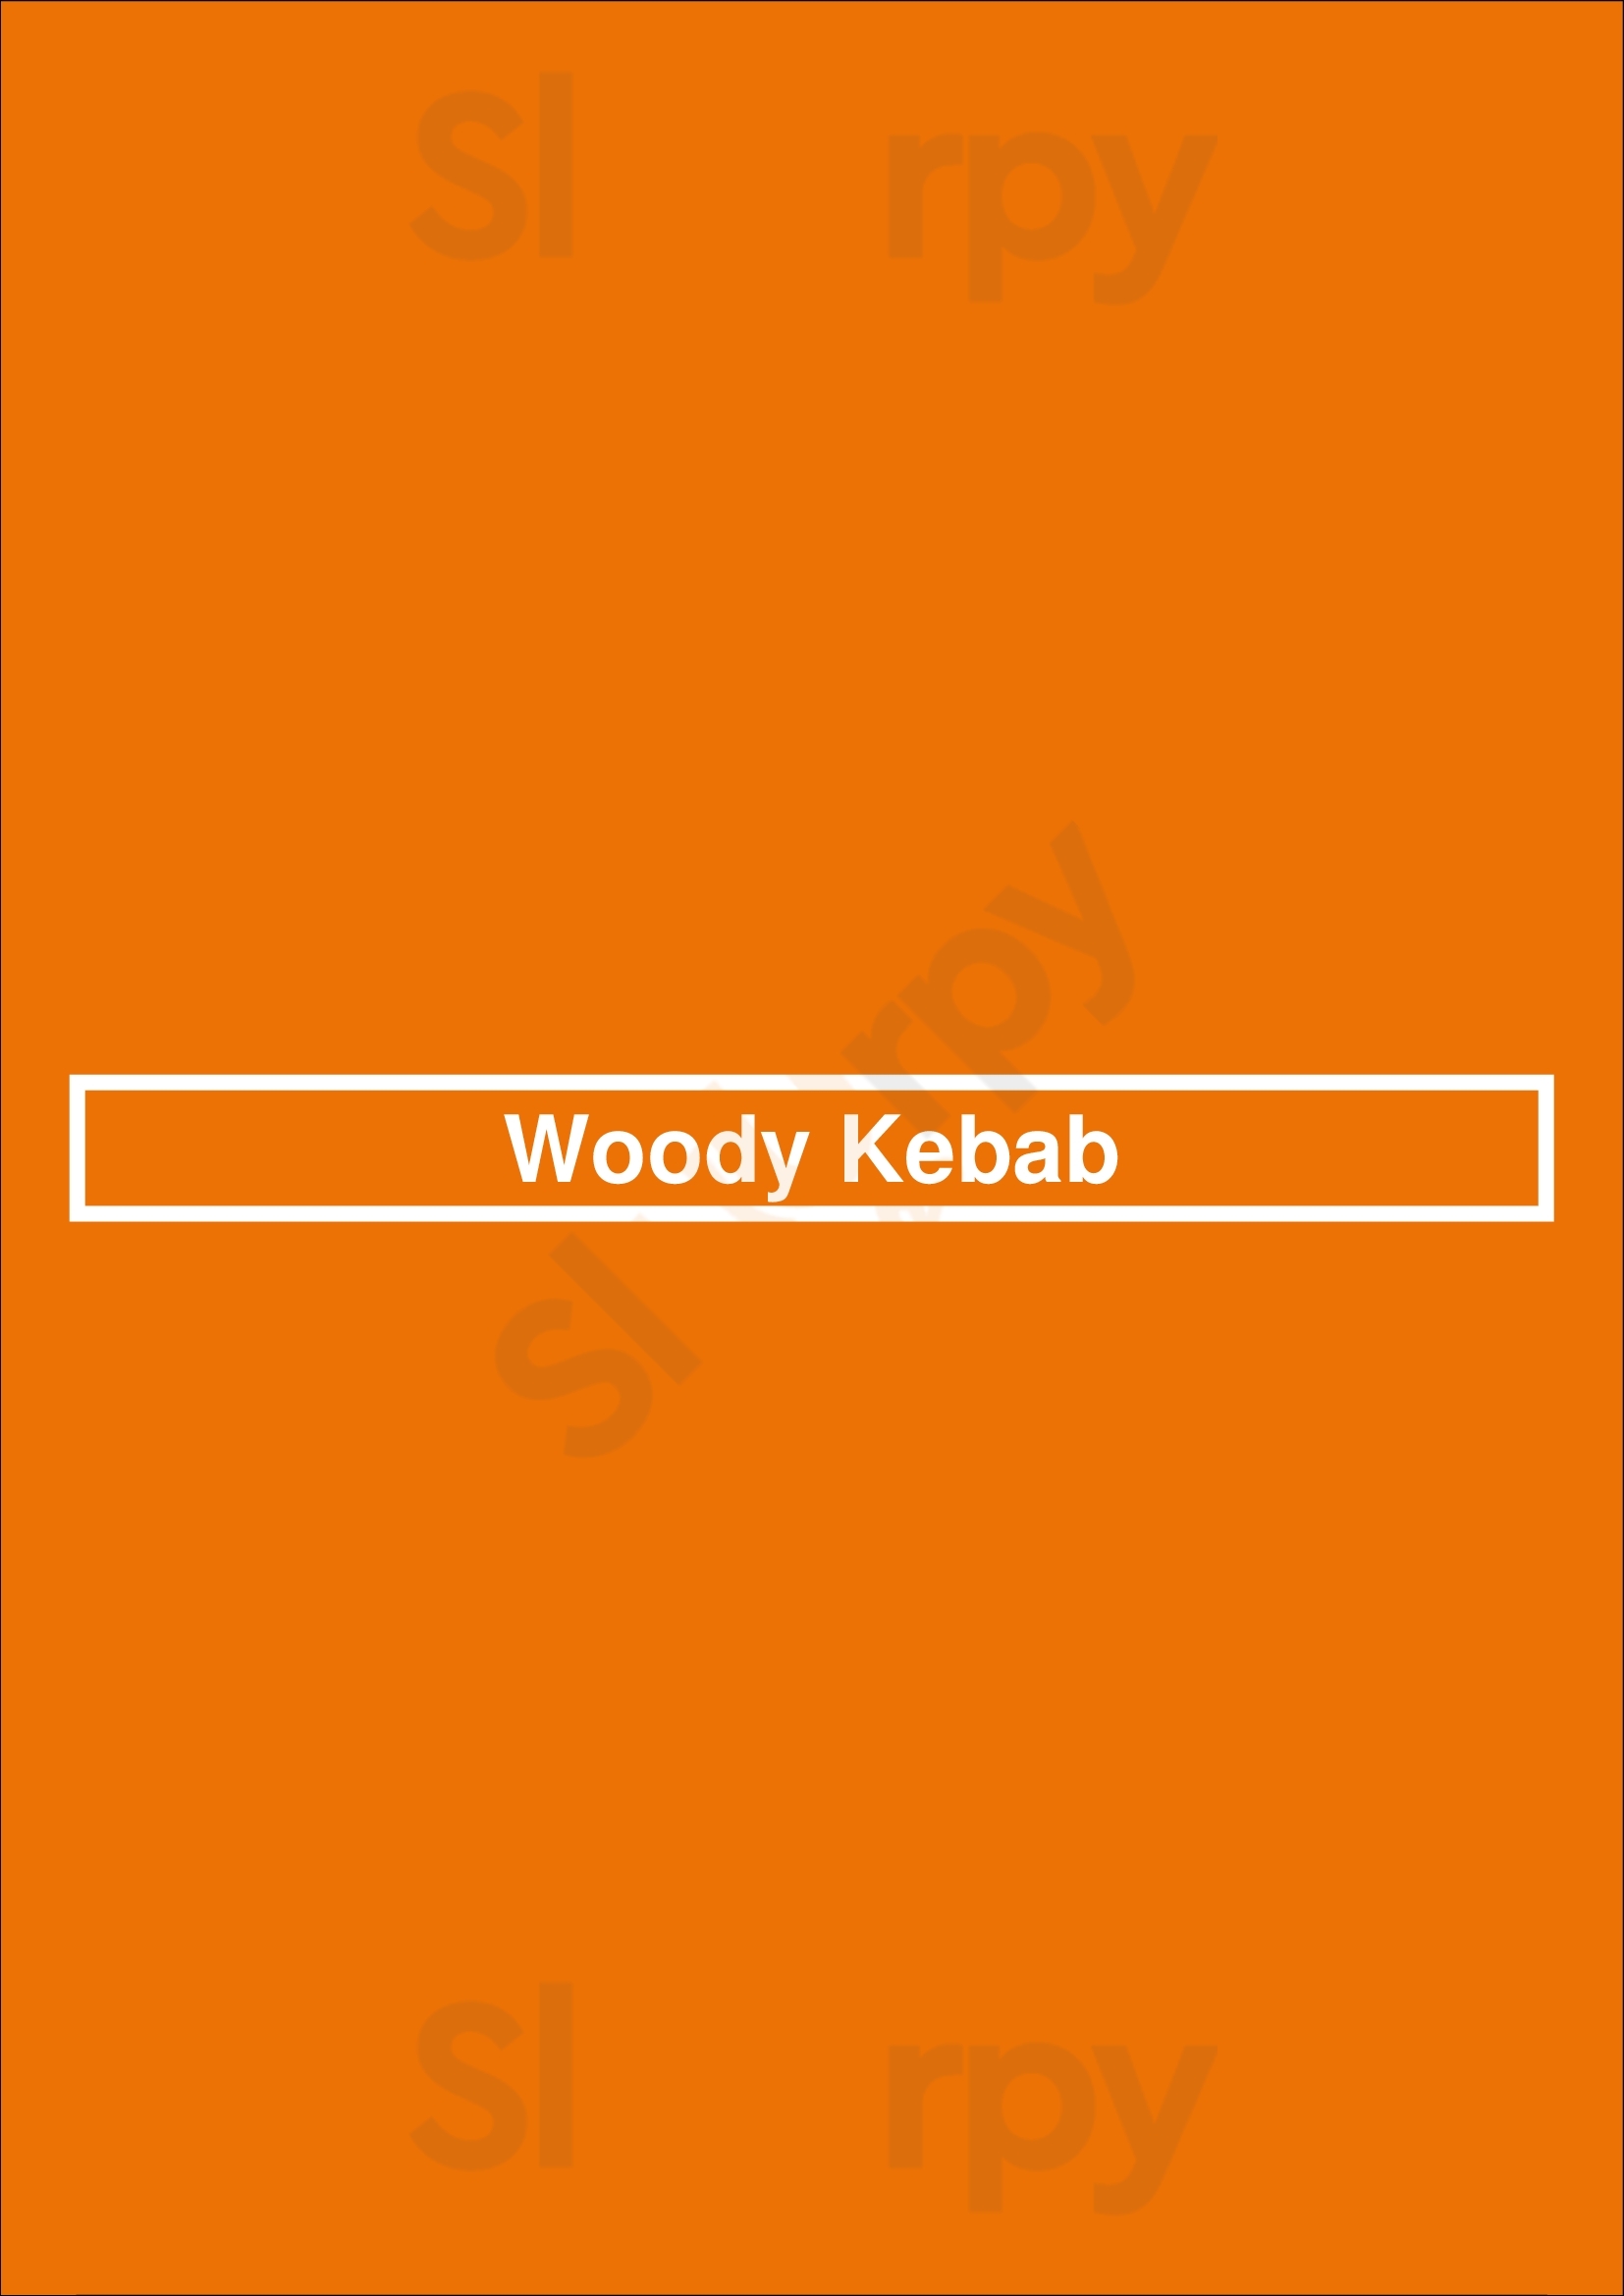 Woody Kebab Hounslow Menu - 1